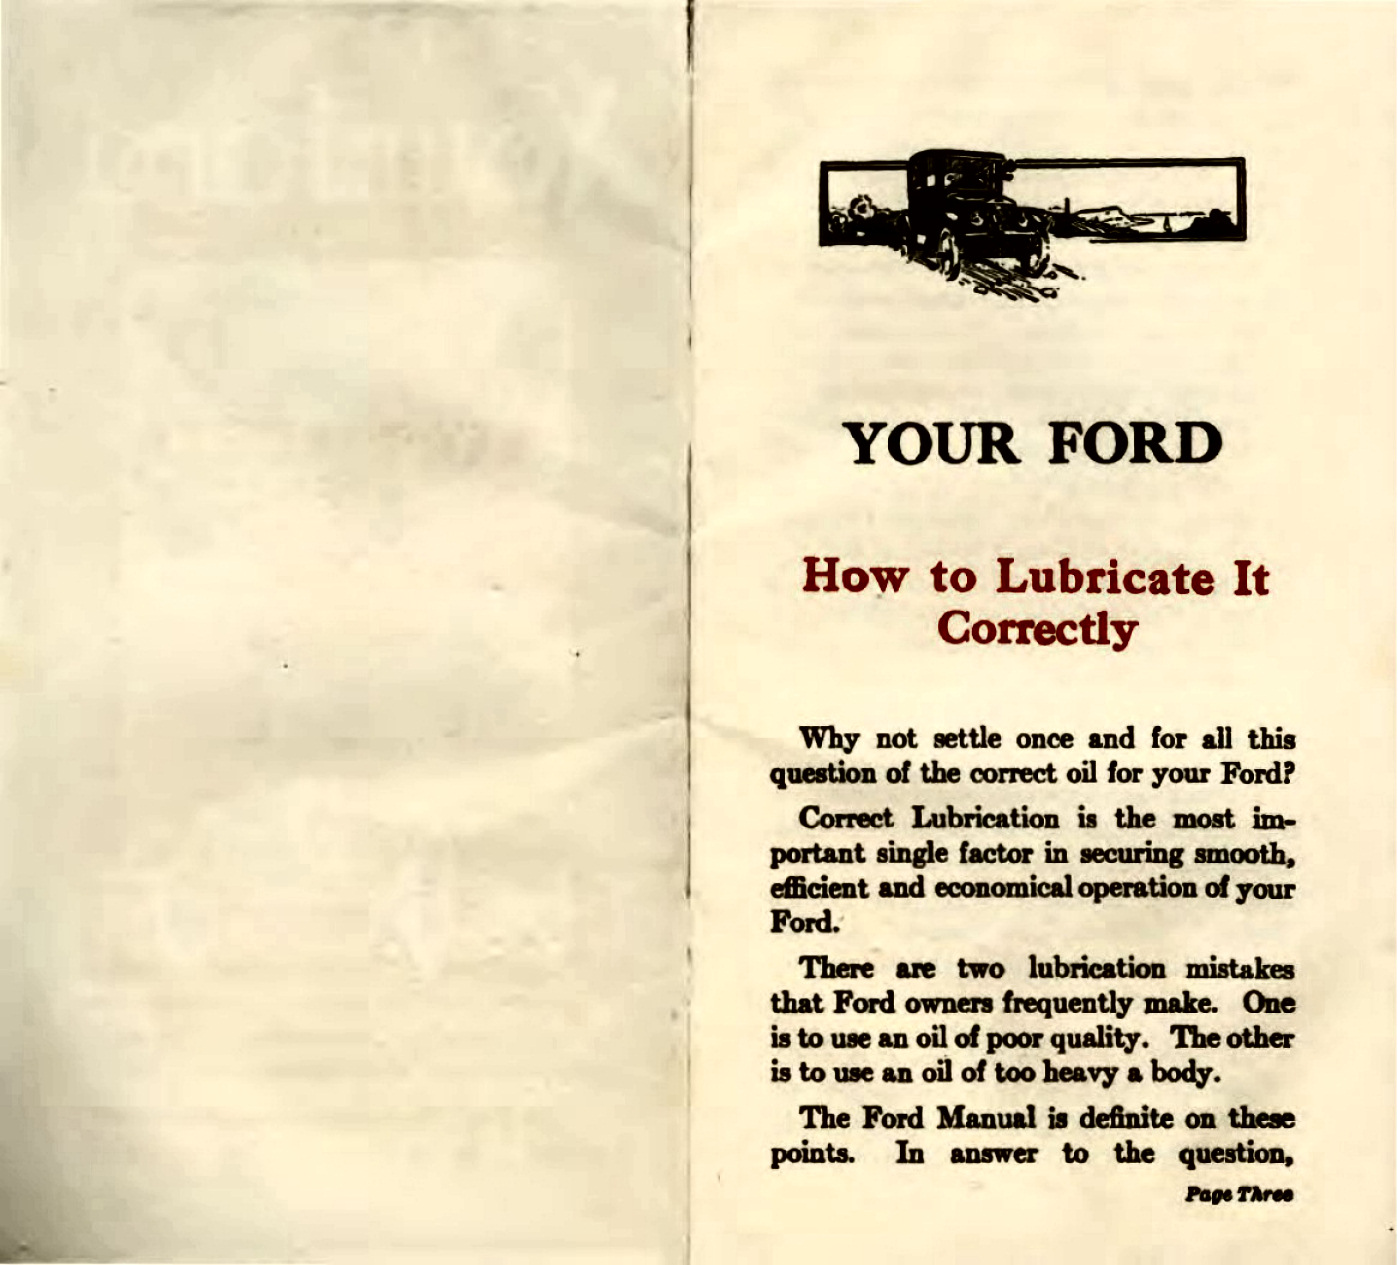 n_1923 Ford Lube Booklet-02-03.jpg